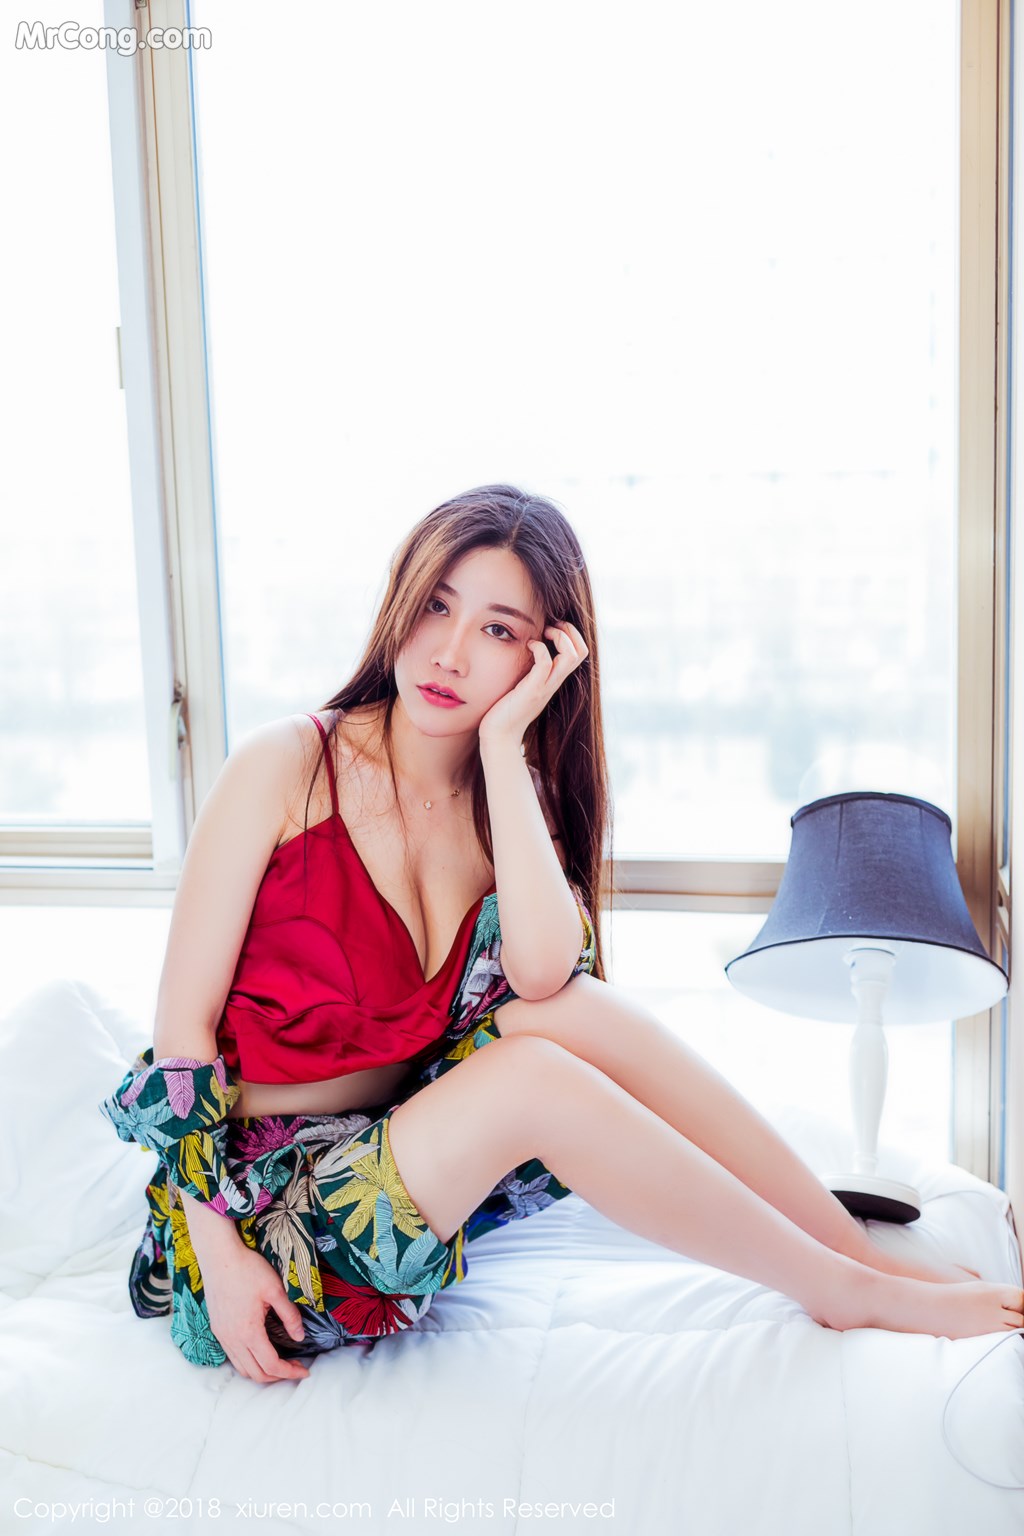 XIUREN No.959: Model Mei Xin Yumi (美 昕 Yumi) (84 photos)